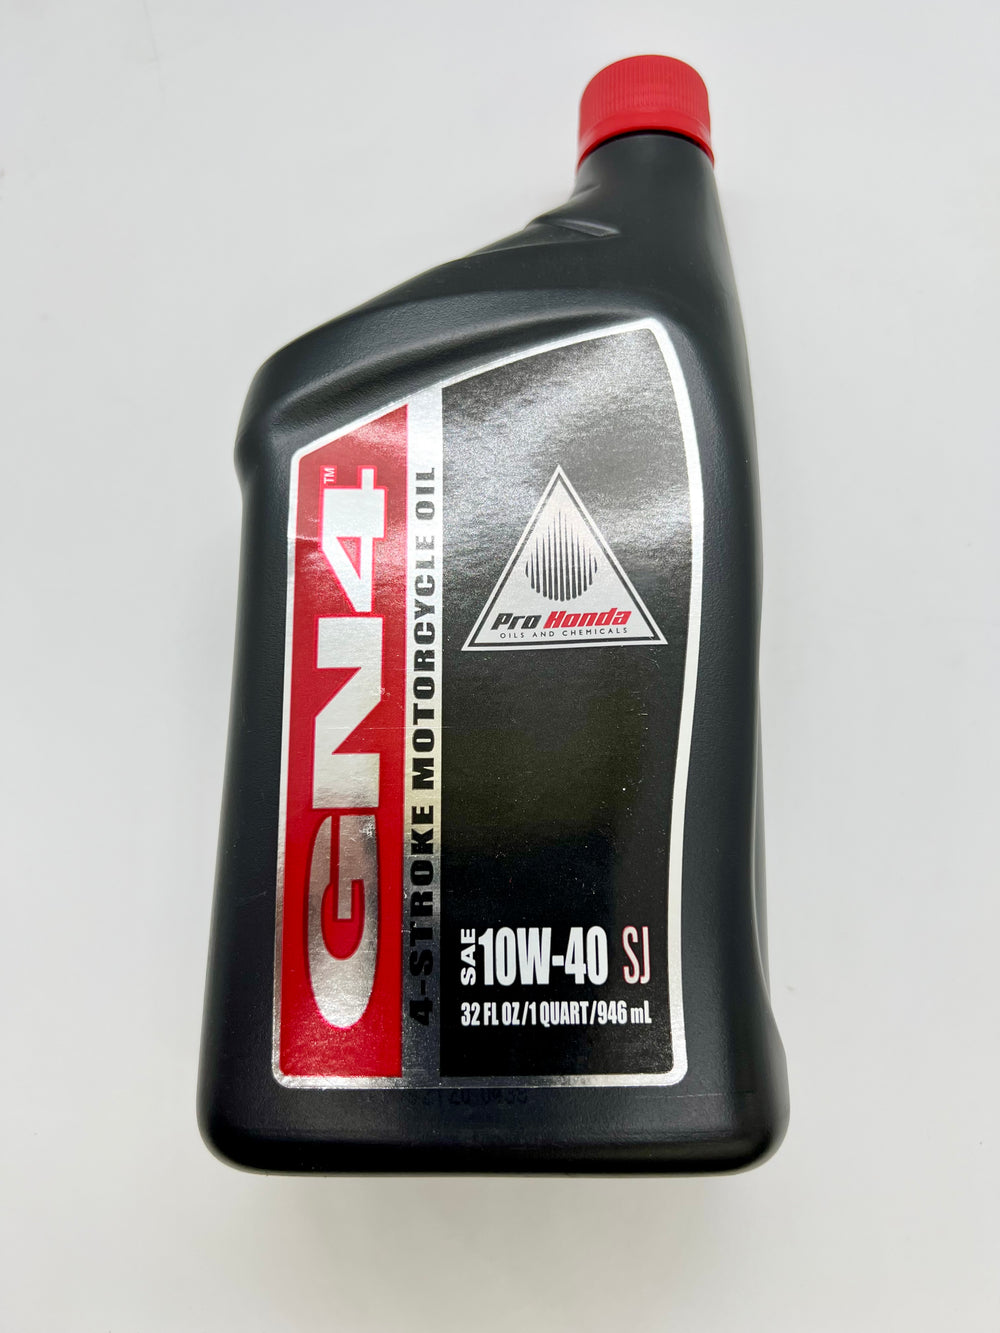 1 quart Honda GN4 10w-40 engine oil